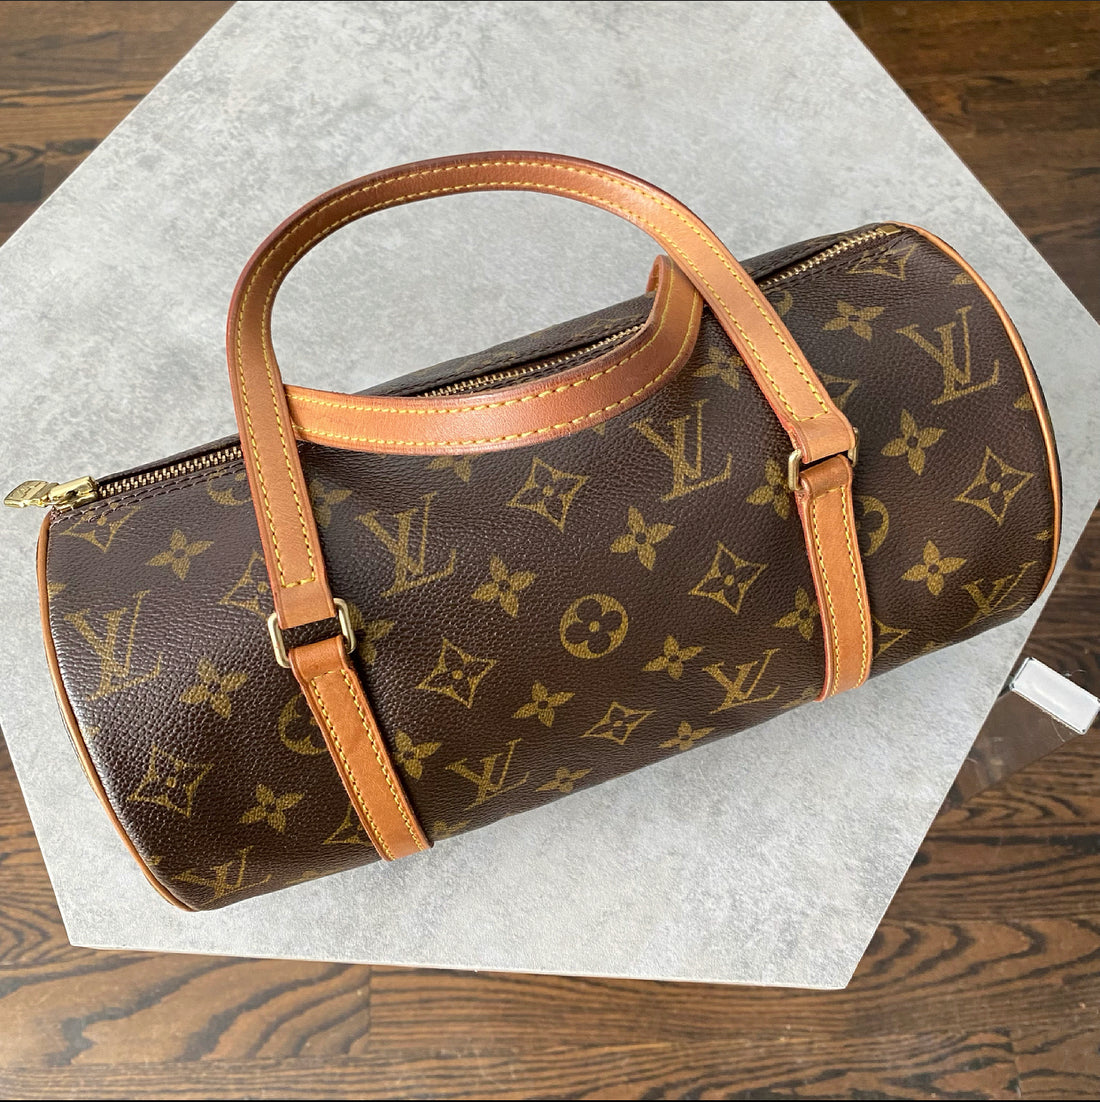 Louis Vuitton-Monogram Papillon 26 Handbag - Couture Traders